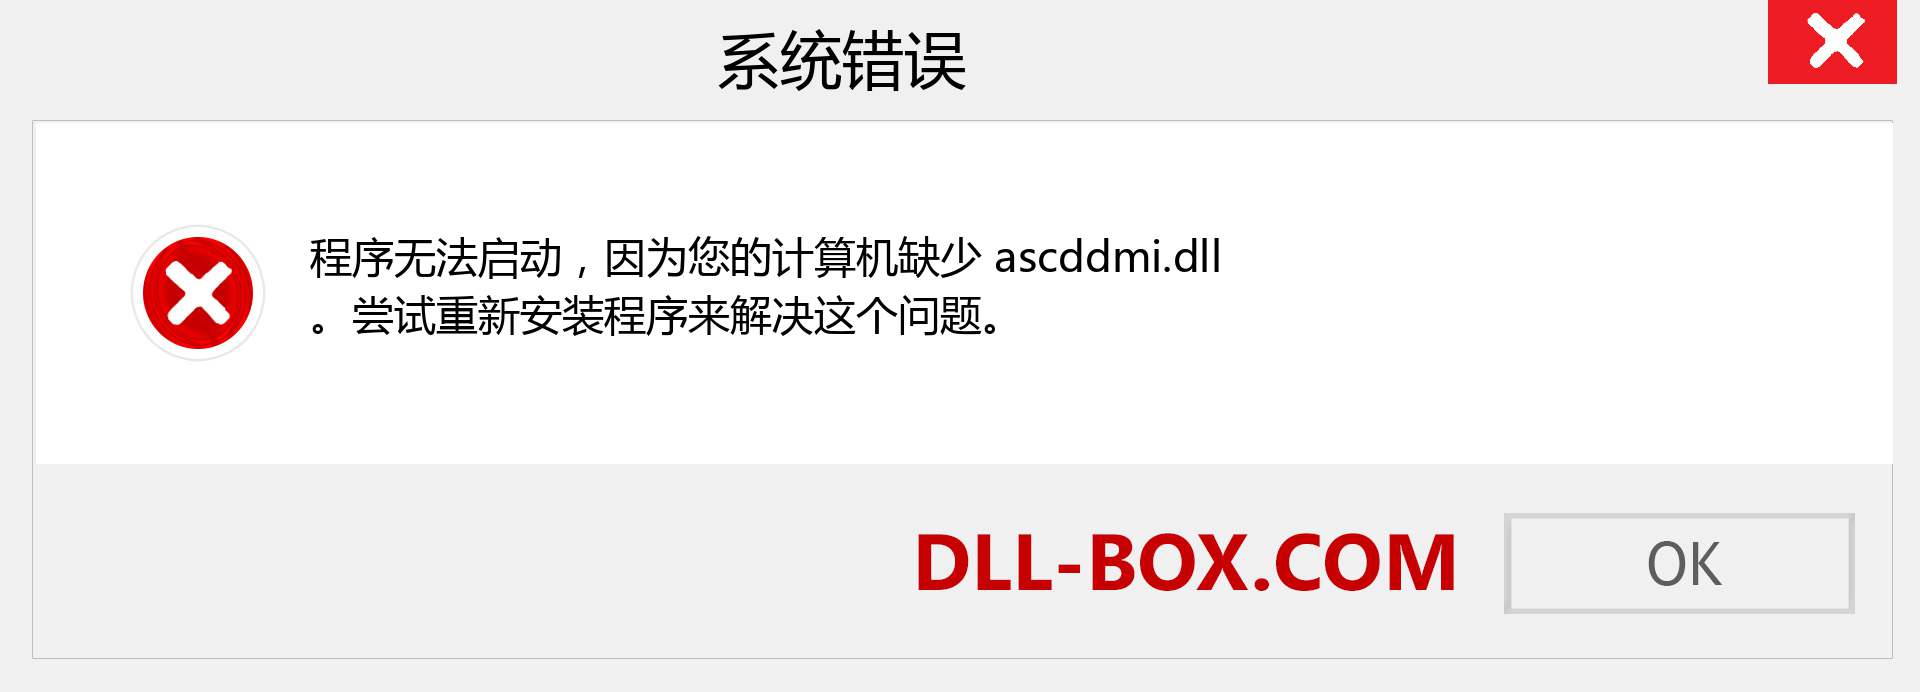 ascddmi.dll 文件丢失？。 适用于 Windows 7、8、10 的下载 - 修复 Windows、照片、图像上的 ascddmi dll 丢失错误